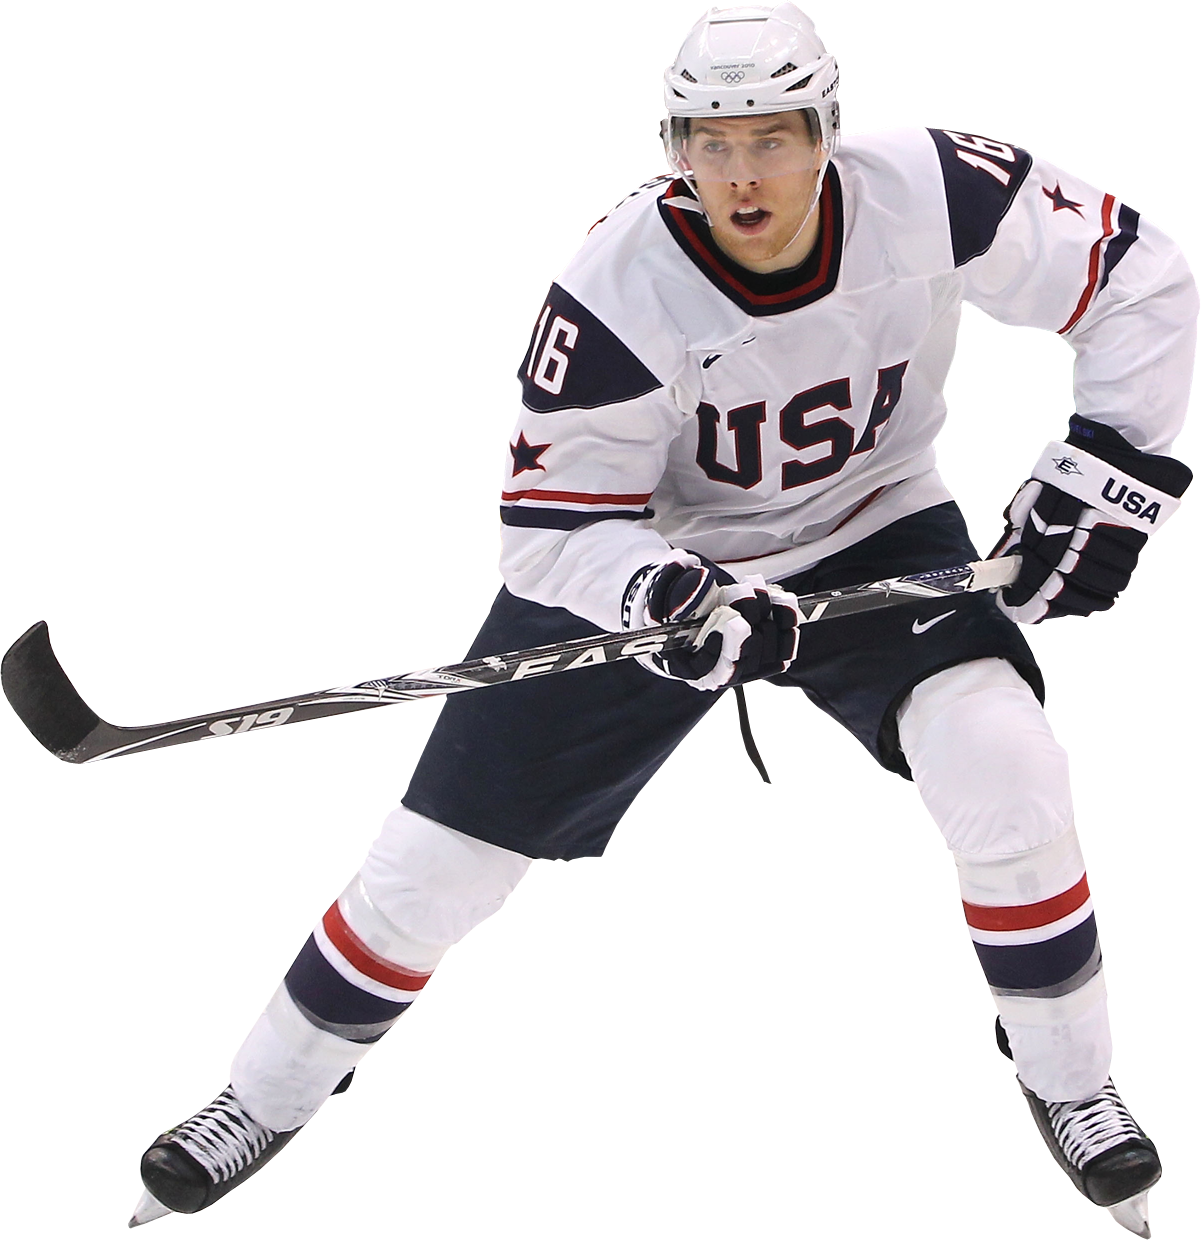 A Man In A Hockey Uniform